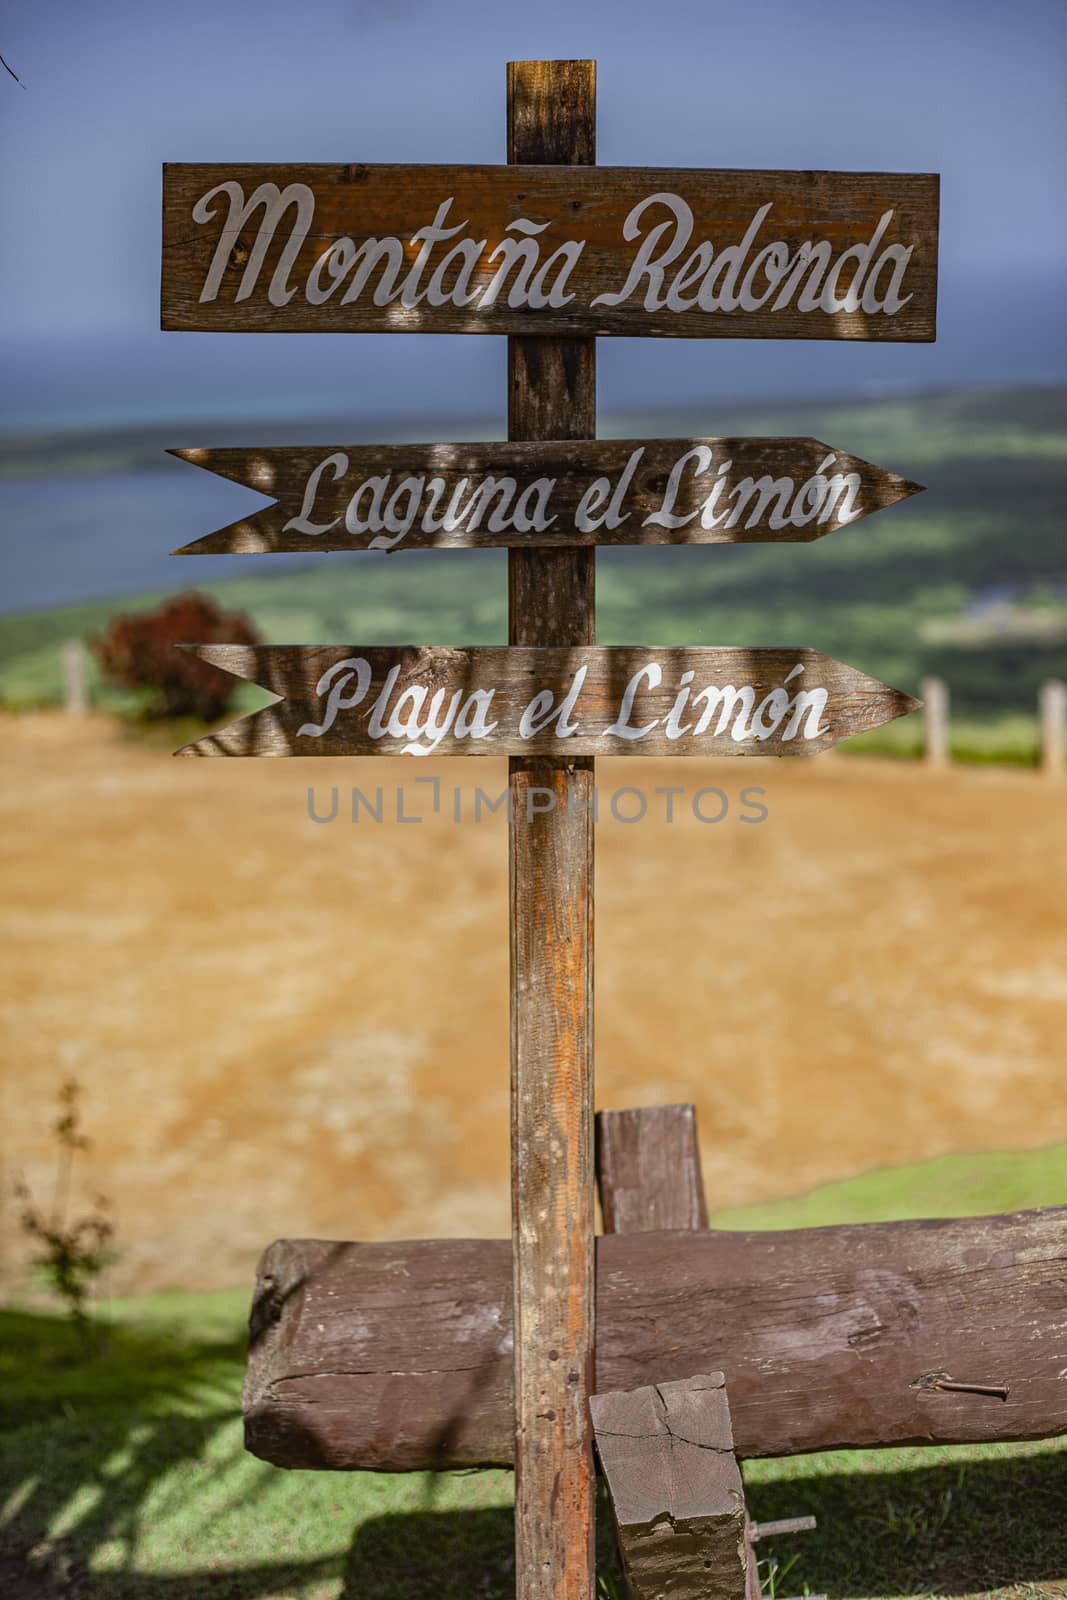 Indication for Montana Redonda, Laguna Limon and Playa Limon by pippocarlot